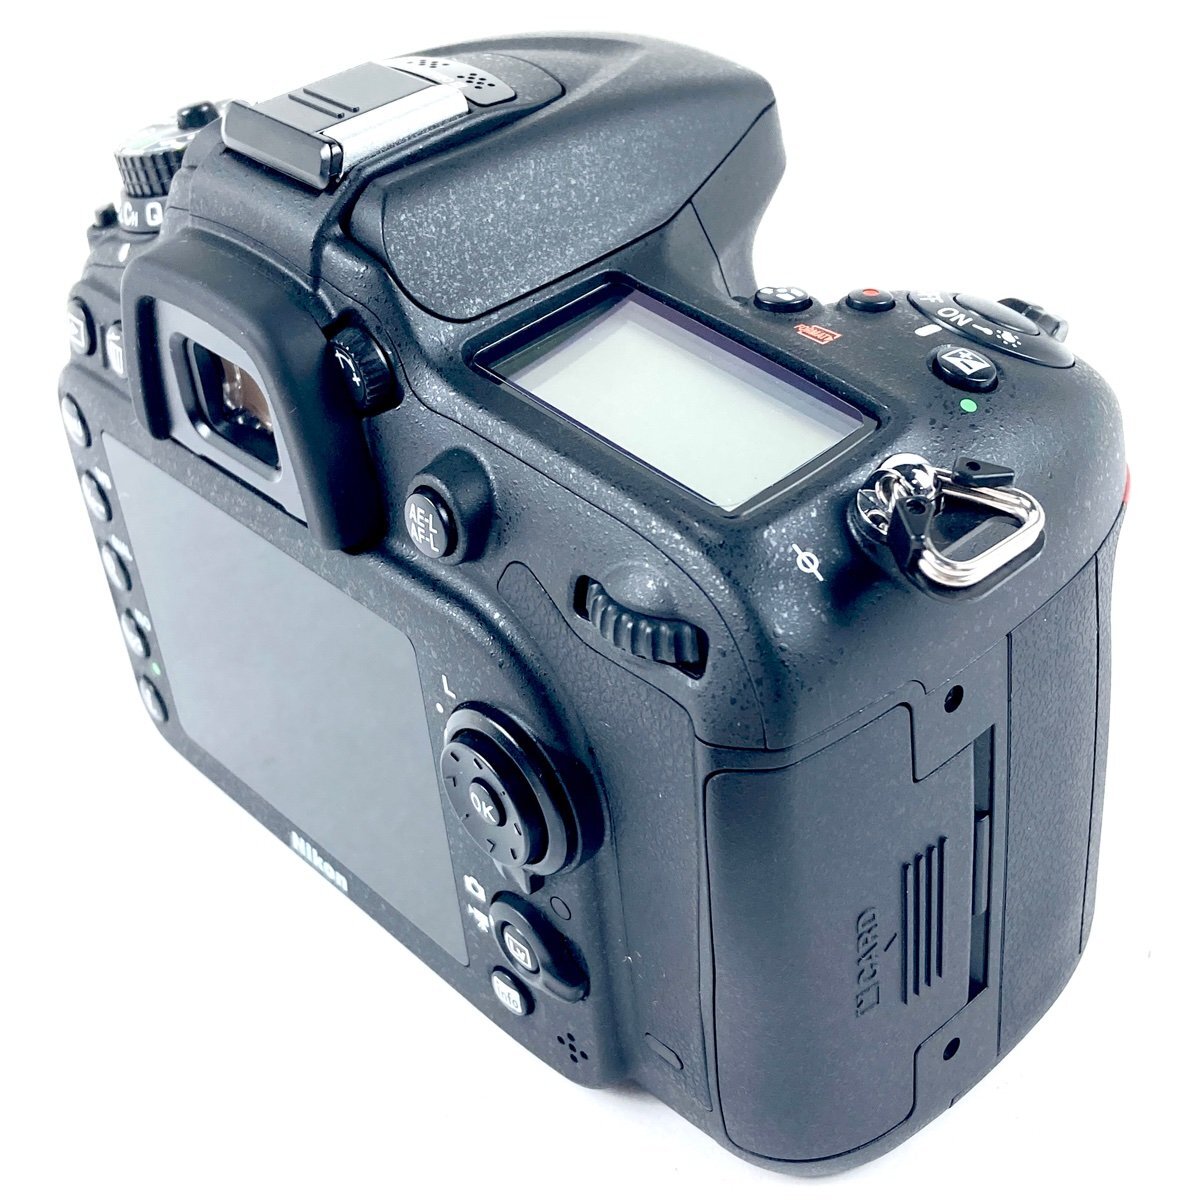 ニコン Nikon D7100 + AF-S DX NIKKOR 18-200mm F3.5-5.6G ED VR デジタル 一眼レフカメラ 【中古】_バイセル 31051_3